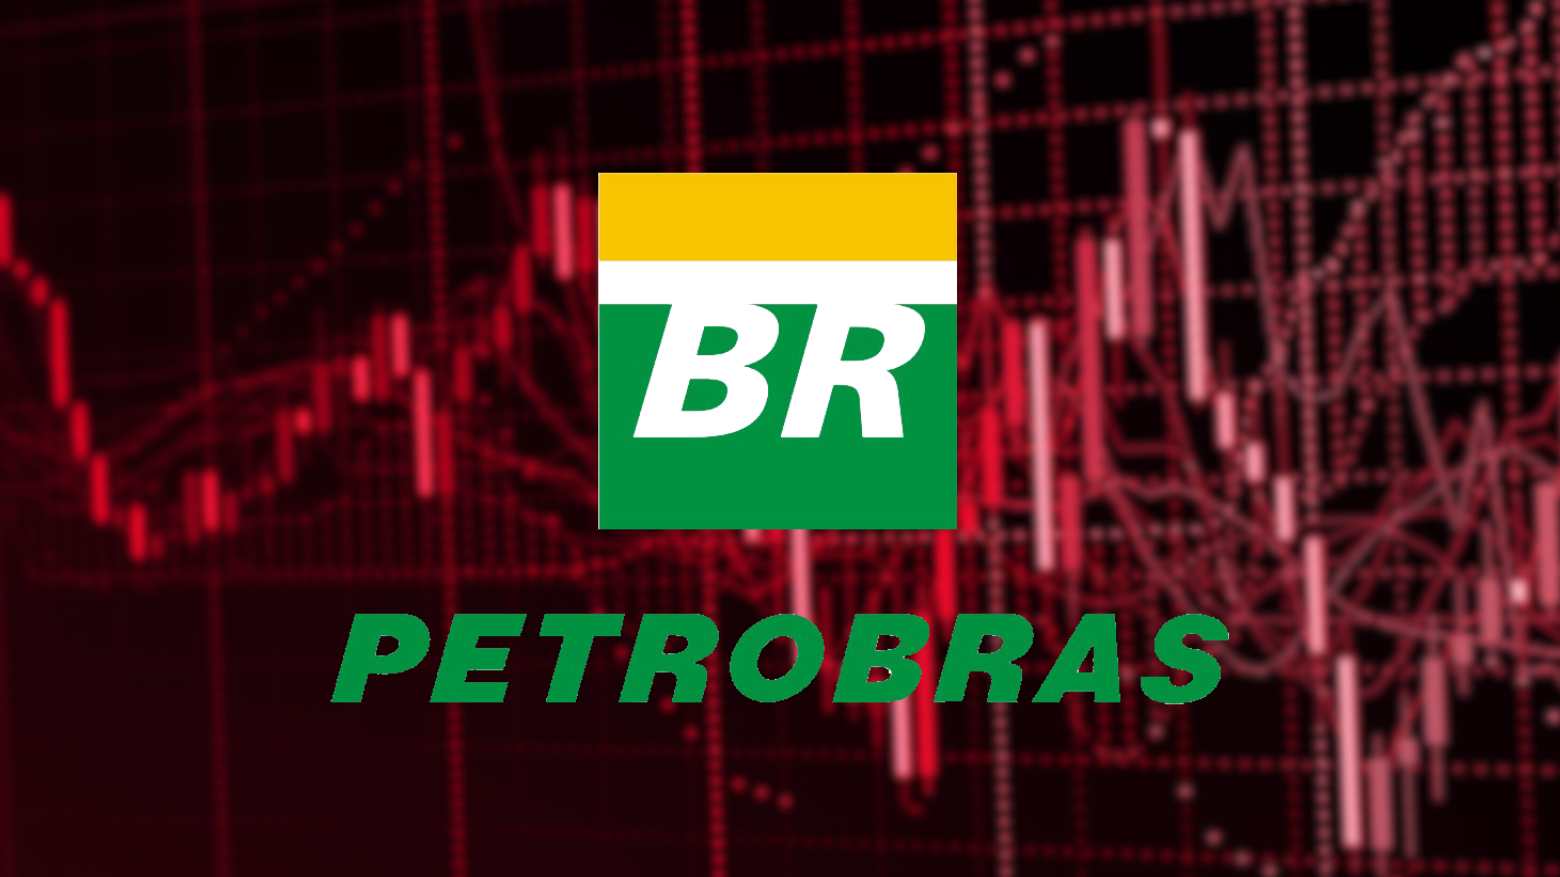 Crise na Petrobras (PETR4)? Após rumores sobre dividendos e Mercadante como possível CEO, ações entram em ‘montanha-russa’; veja o que fazer